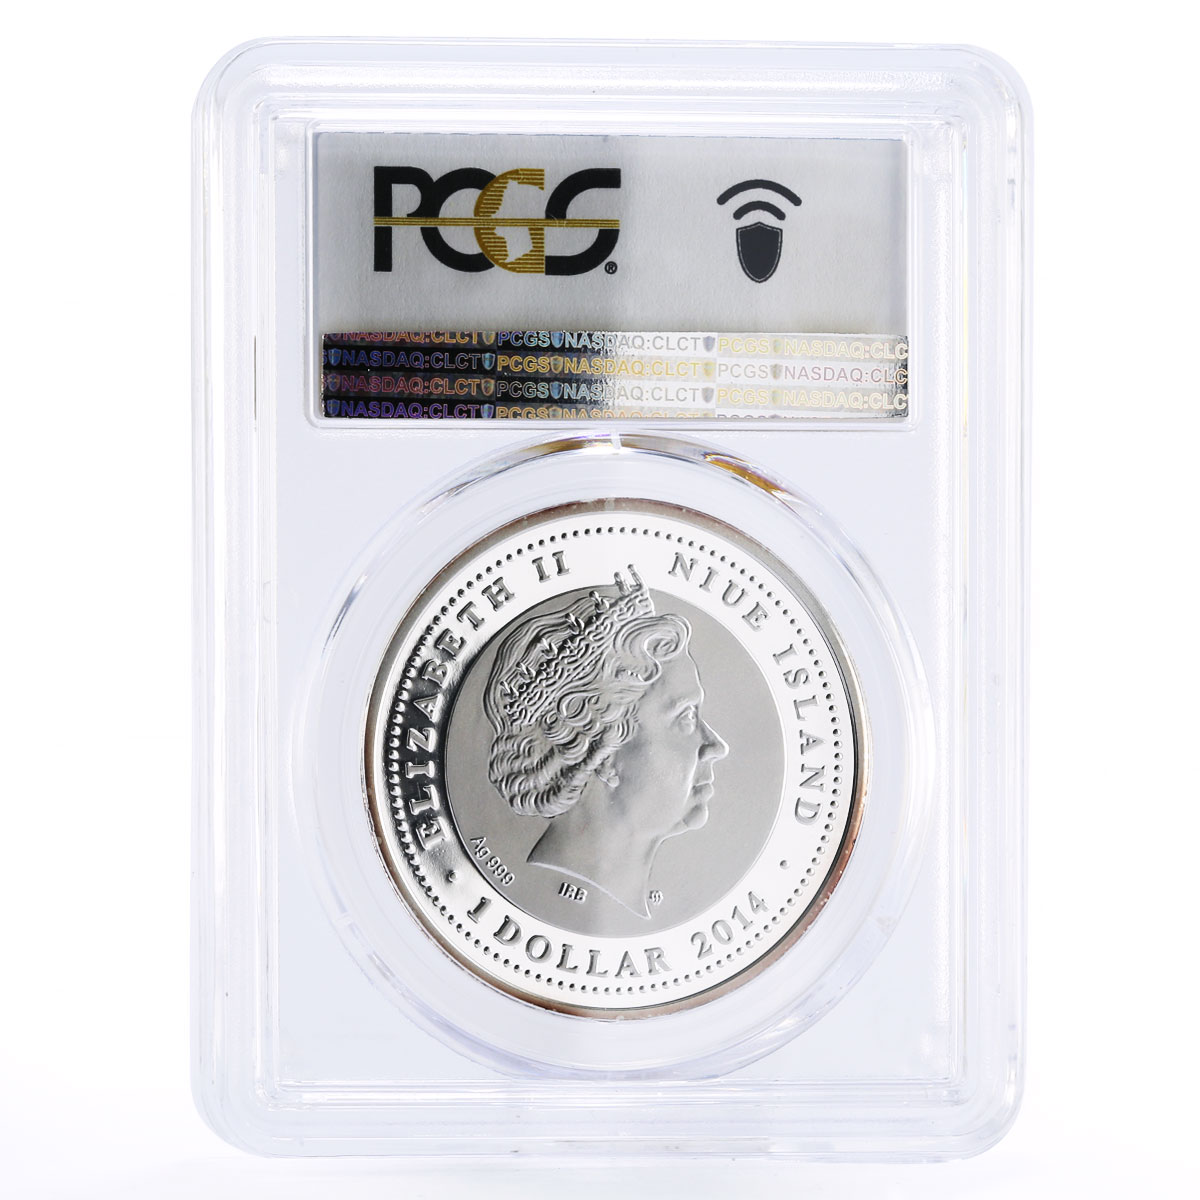 Niue 1 dollar Endangered Wildlife Mountain Gorilla PR70 PCGS silver coin 2014